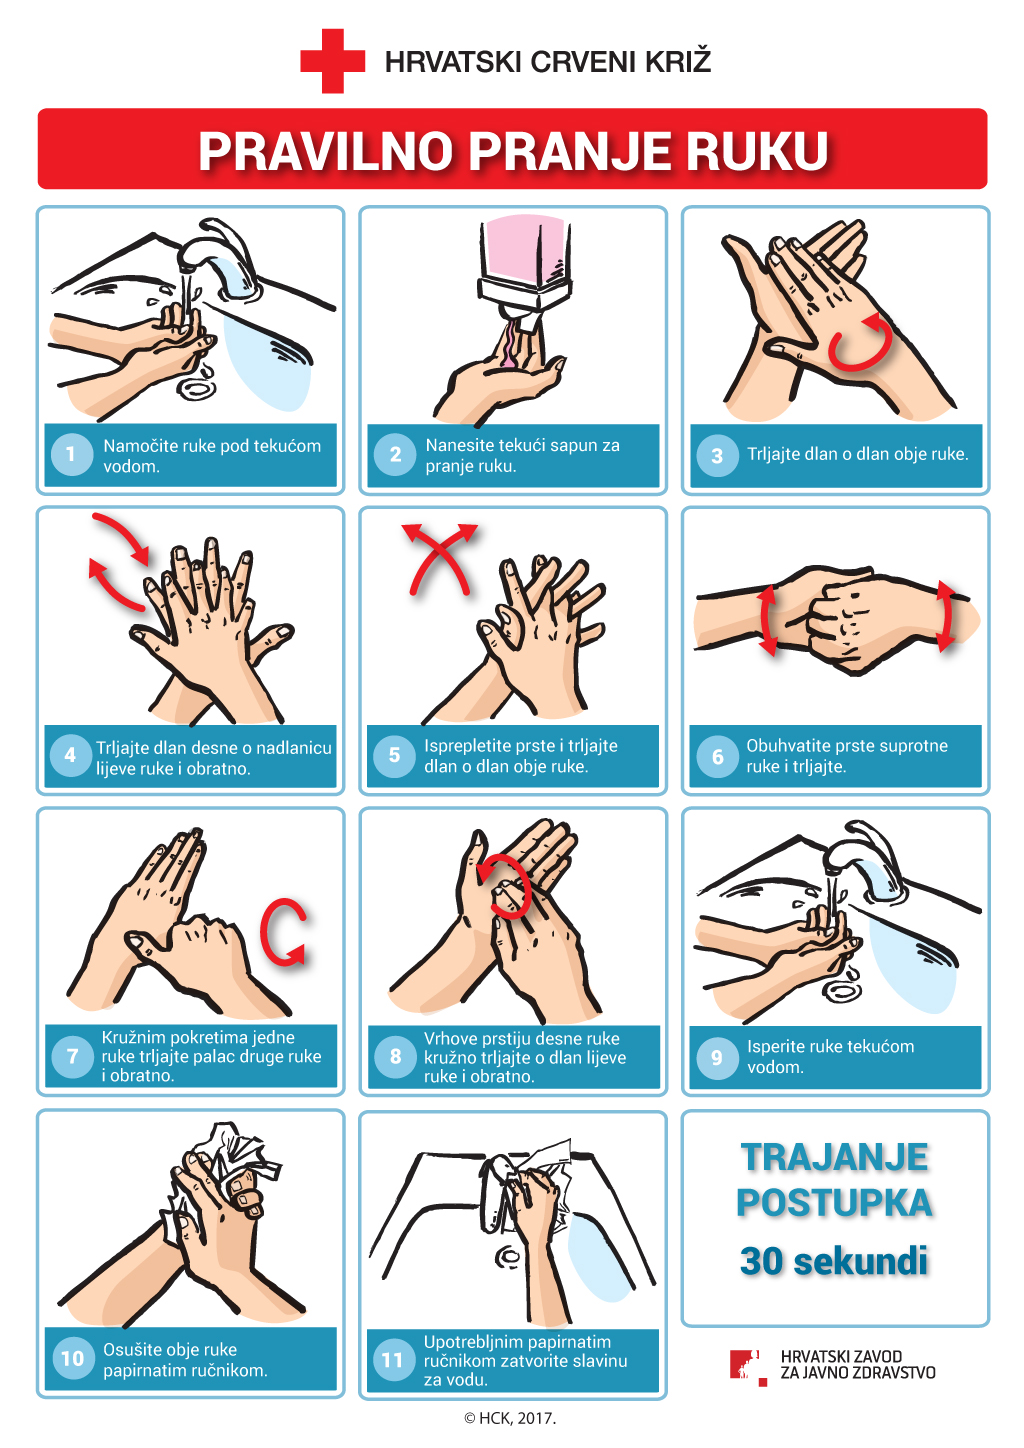 Pravilno pranje ruku | Hrvatski zavod za javno zdravstvo